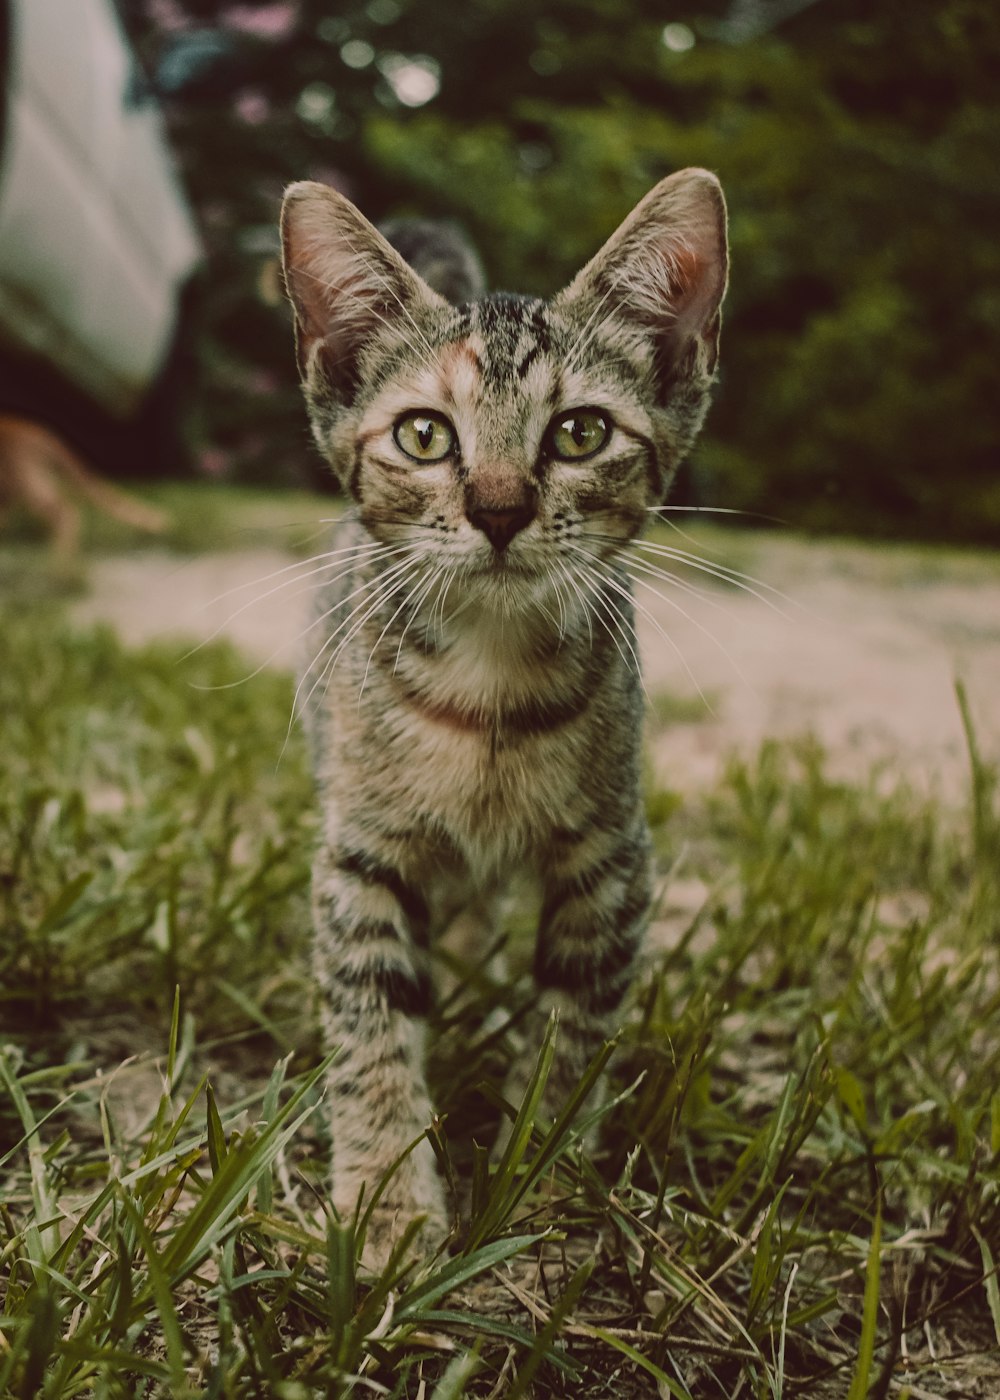 a small kitten walking across a lush green field